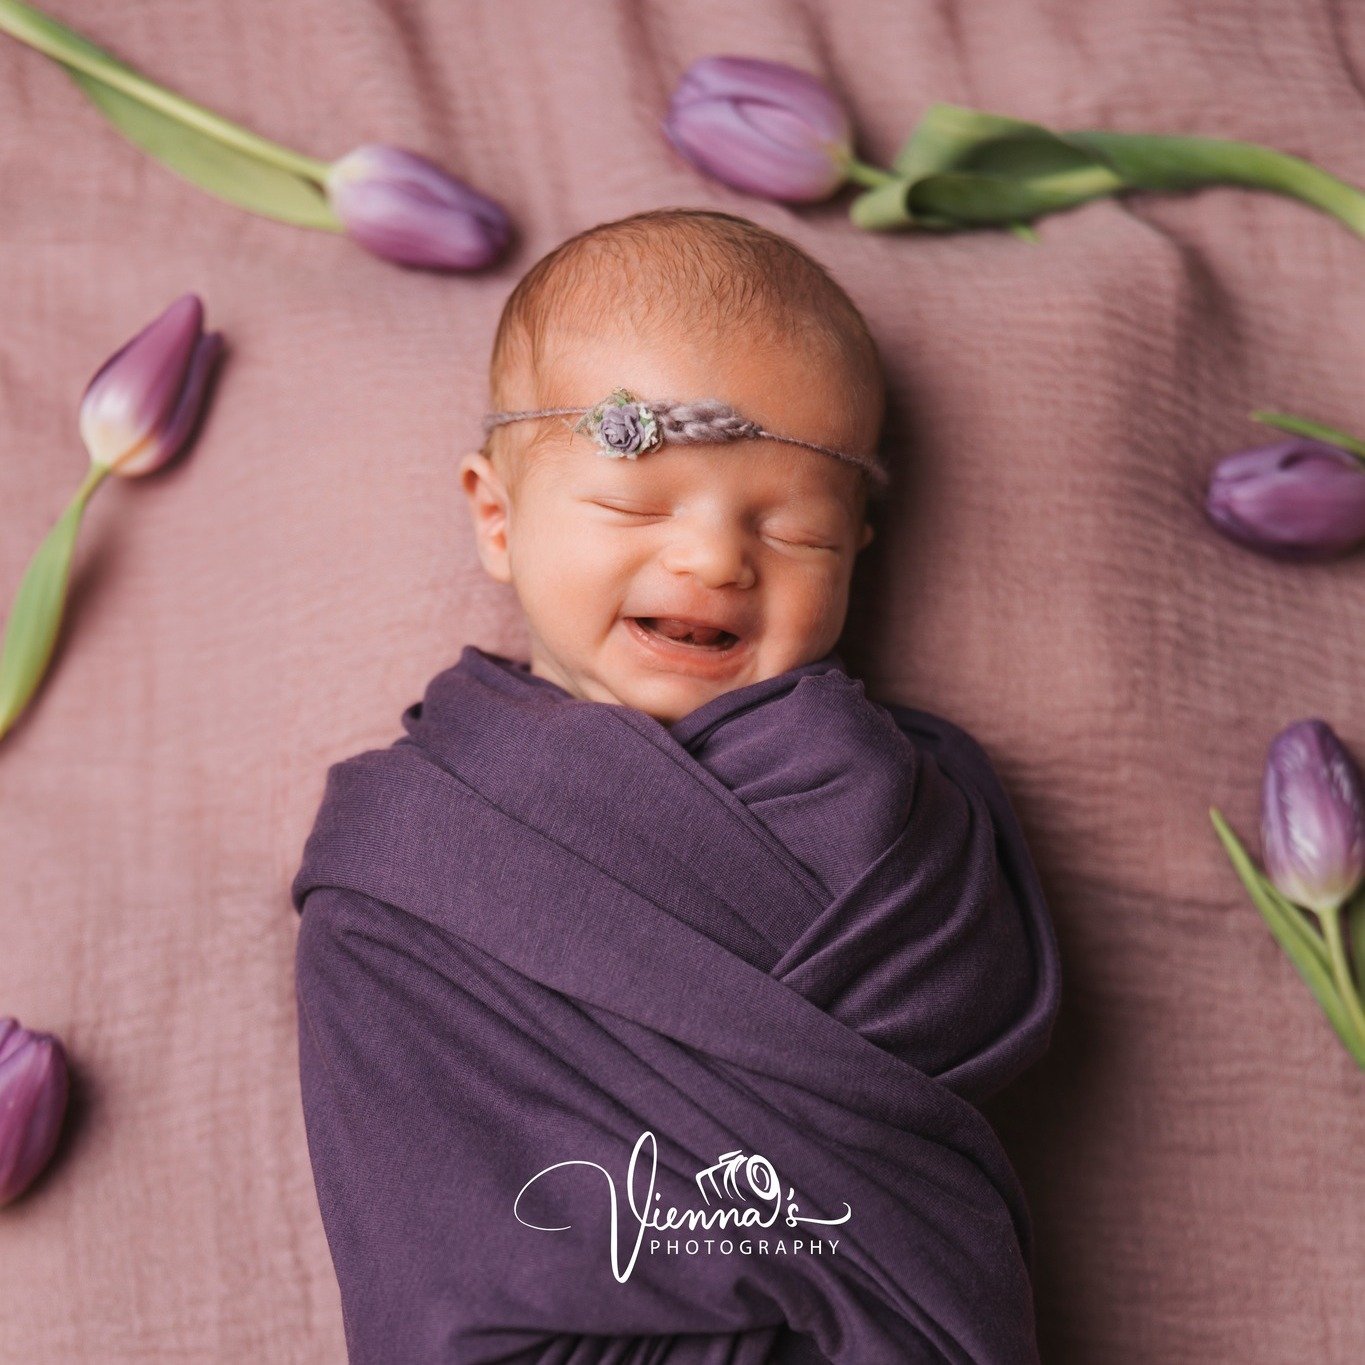 Tijdens een newborn sessie zijn we natuurlijk altijd op zoek naar het kleine lieve lachje! Als een newborn in een diepere slaap raakt dan ontspannen zij hun spieren en dan ontstaan er soms een schattig glimlachje!

Wil jij ook een prachtige newborn s